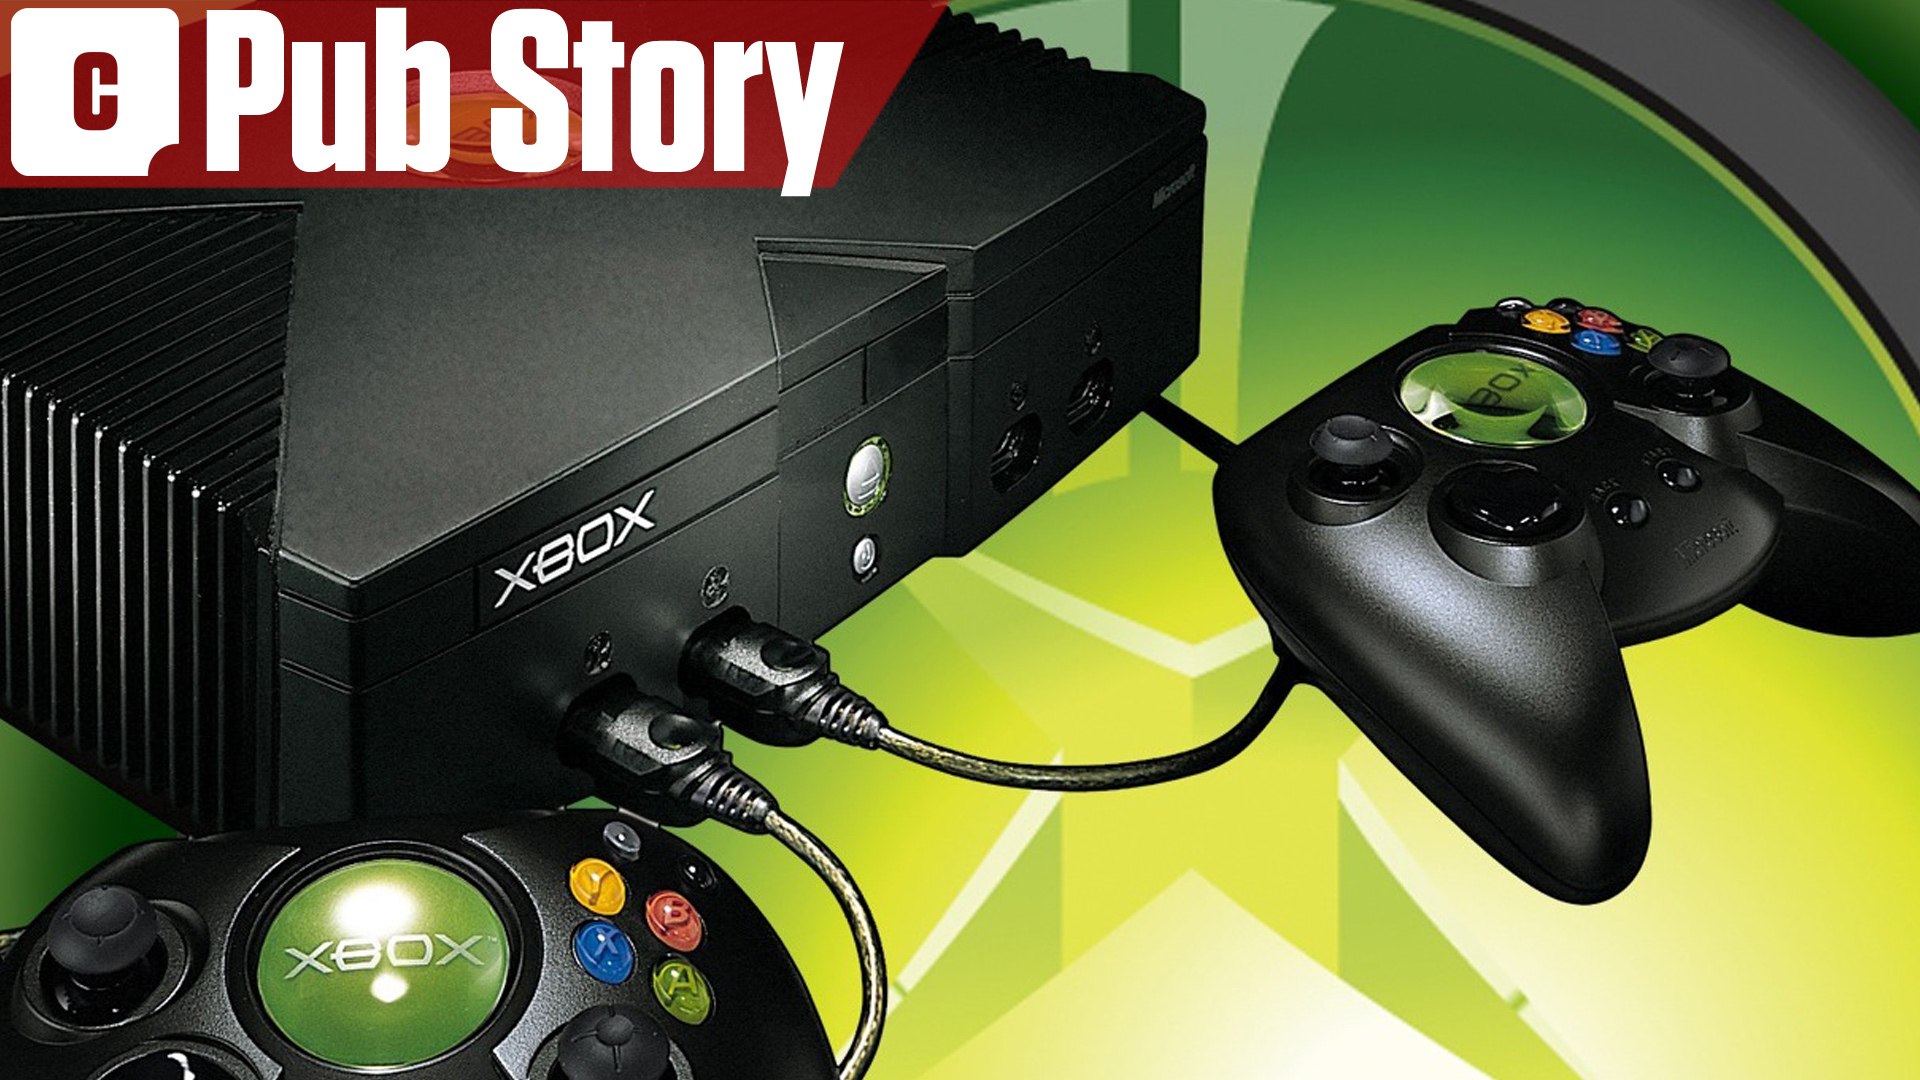 Microsoft Xbox : publicité censurée et campagne de lancement (Pub Story) -  Vidéo Dailymotion